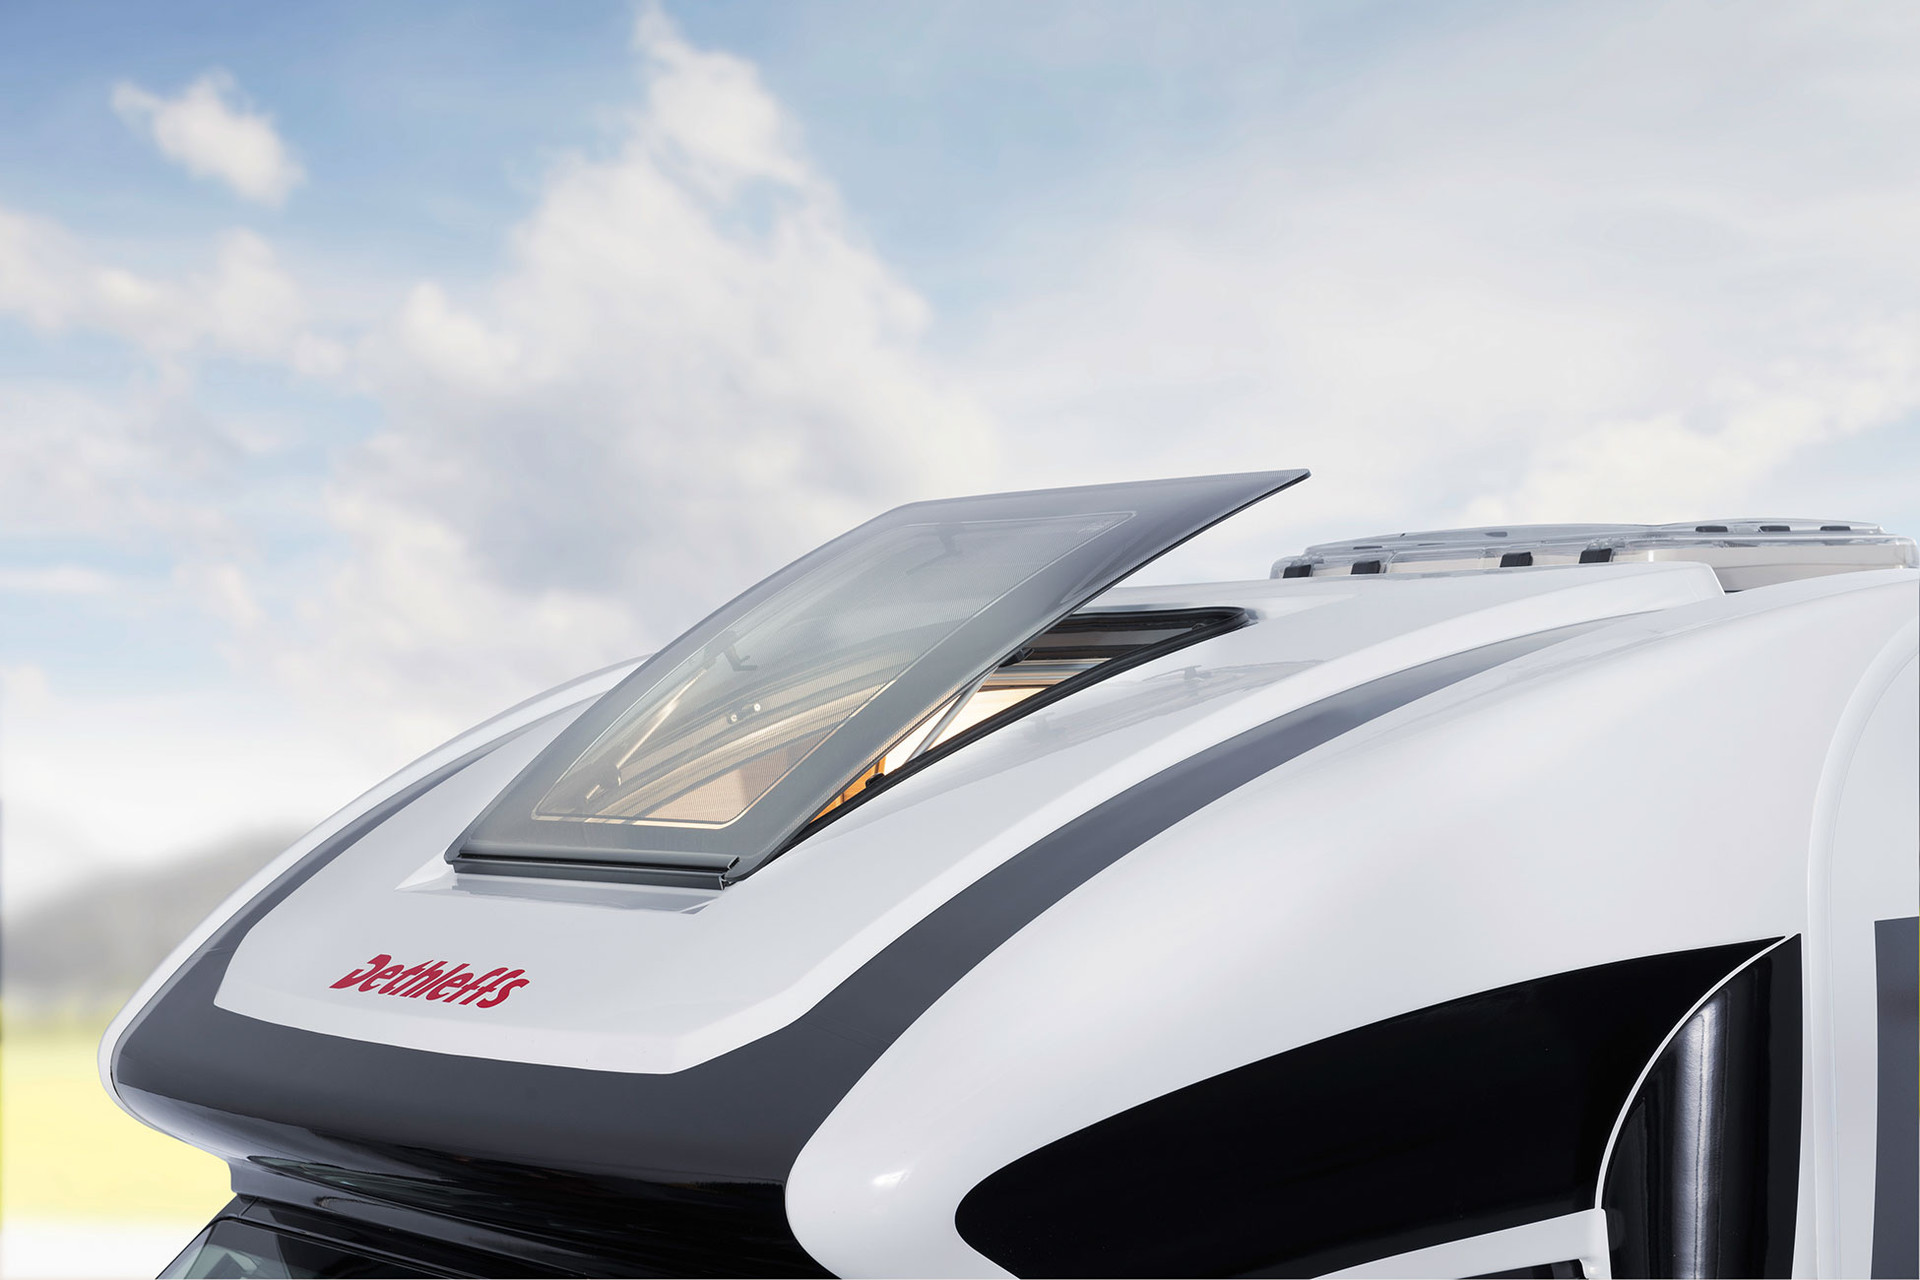 Het aerodynamische dakraam in de kap boven de cabine van de halfintegralen brengt licht en lucht in het voertuig.